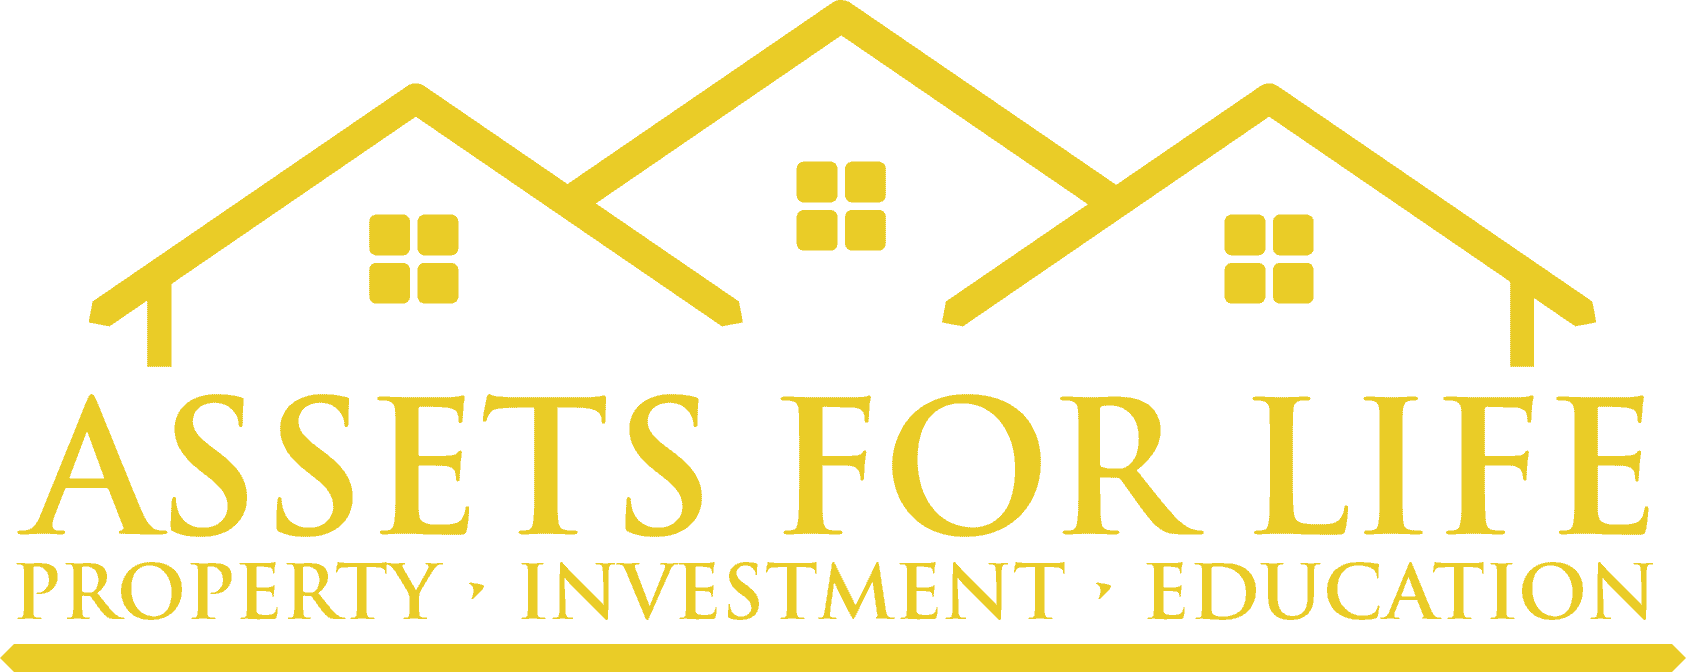 Assets for life logo